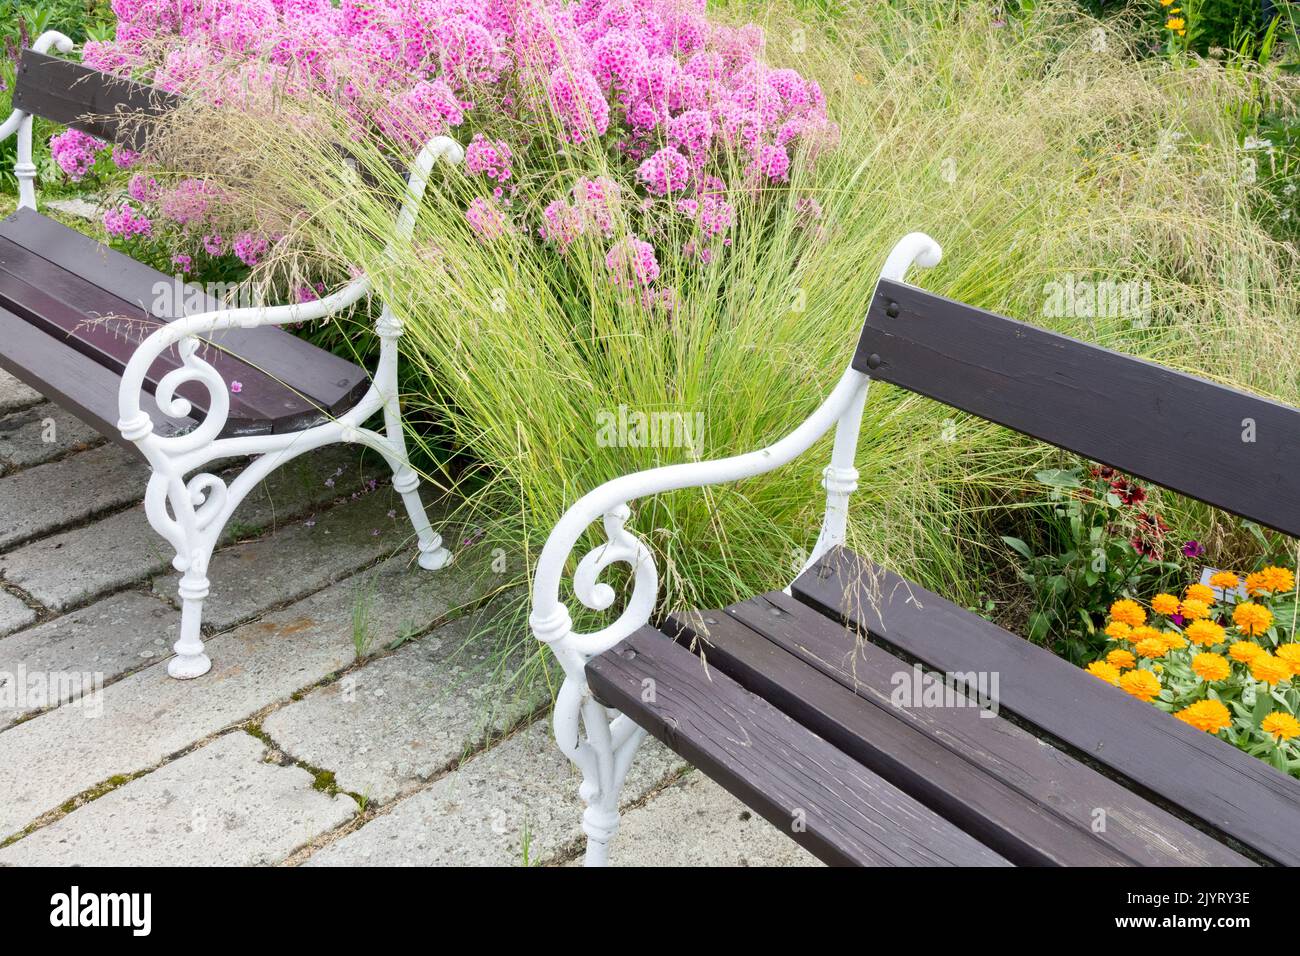 Lieu de détente jardin fleurs roses, jardin phlox, deux bancs dans le jardin, paisible, place assise herbacée frontière Banque D'Images